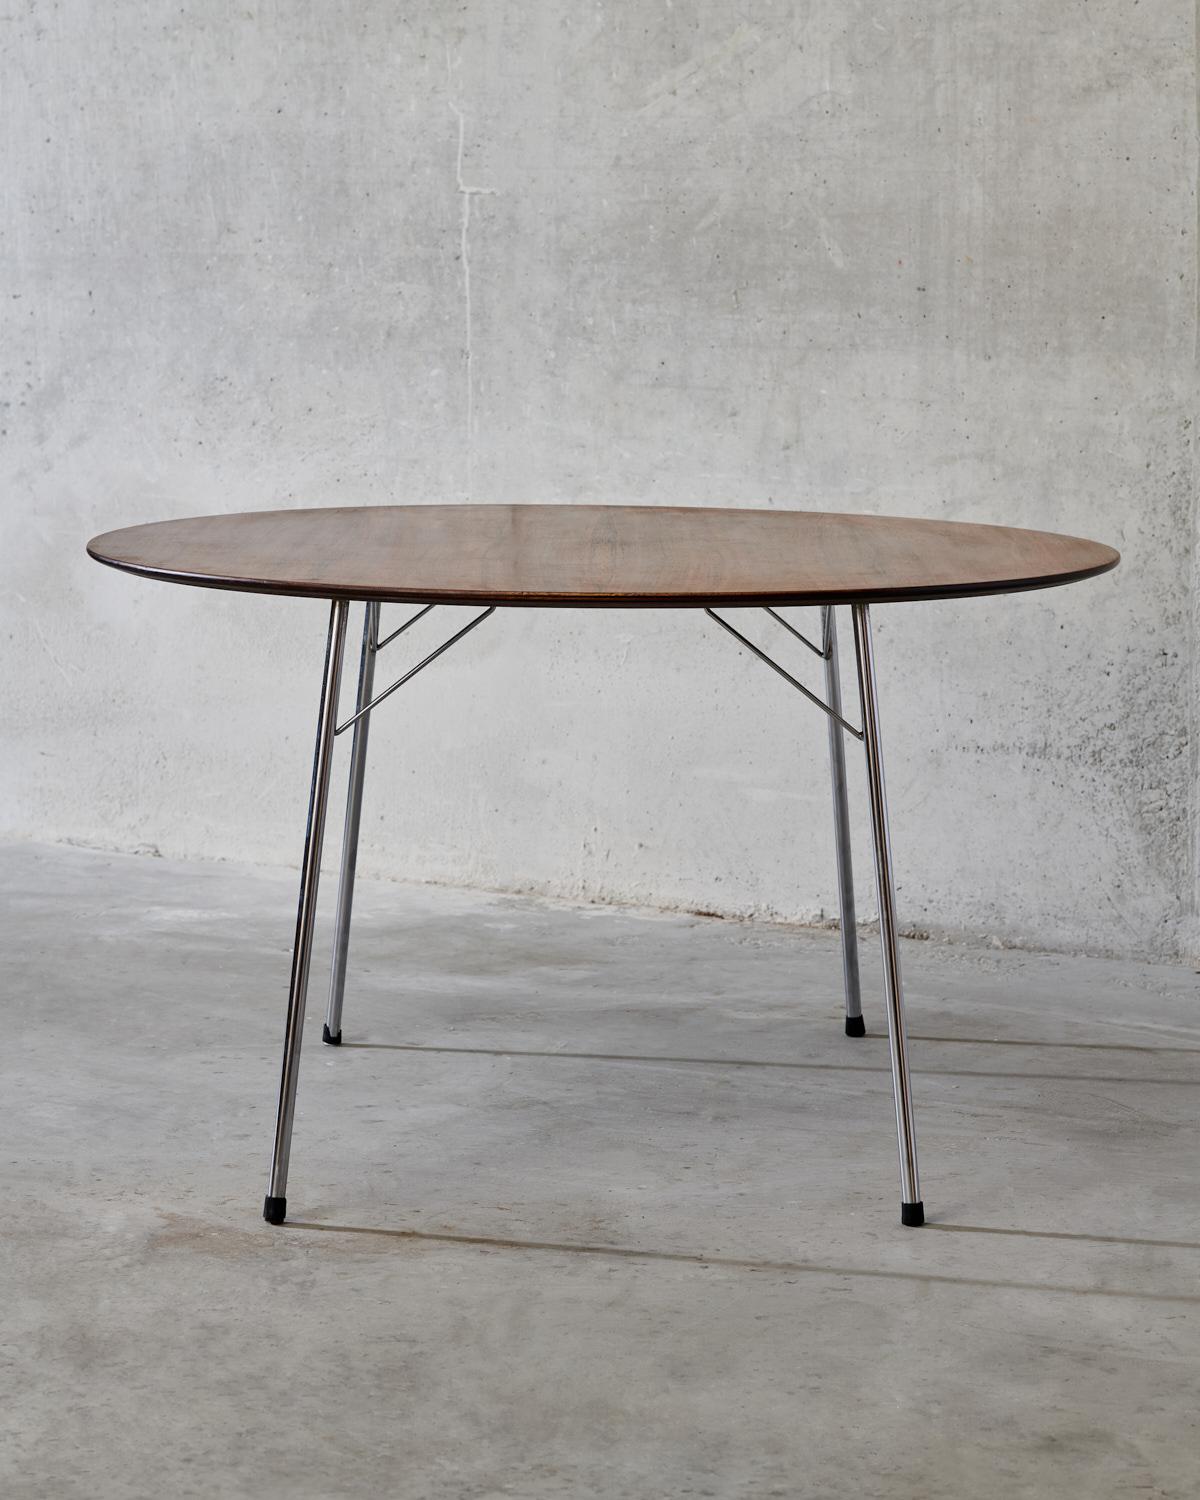 Esstisch aus Teakholz - Modell 3600, entworfen von Arne Jacobsen für Fritz Hansen in Dänemark um 1960. Der Tisch wurde von den ursprünglichen Besitzern erworben, die ihn 1964 als Hochzeitsgeschenk für sich selbst kauften.
Originalherstellerzeichen